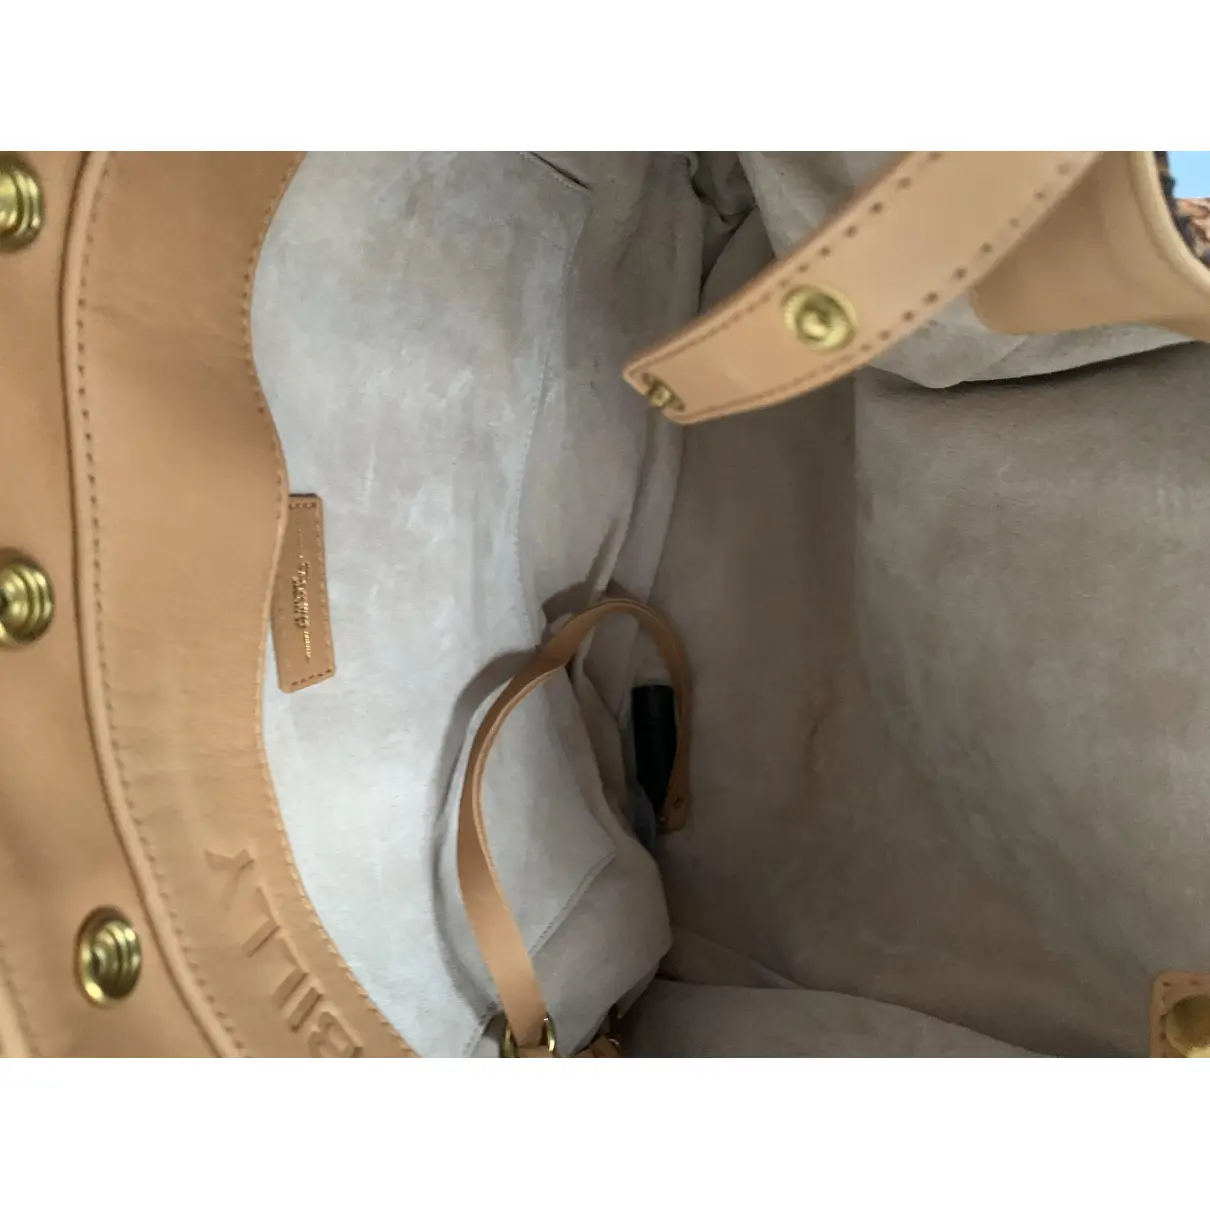 Luxury Jerome Dreyfuss Handbags Women